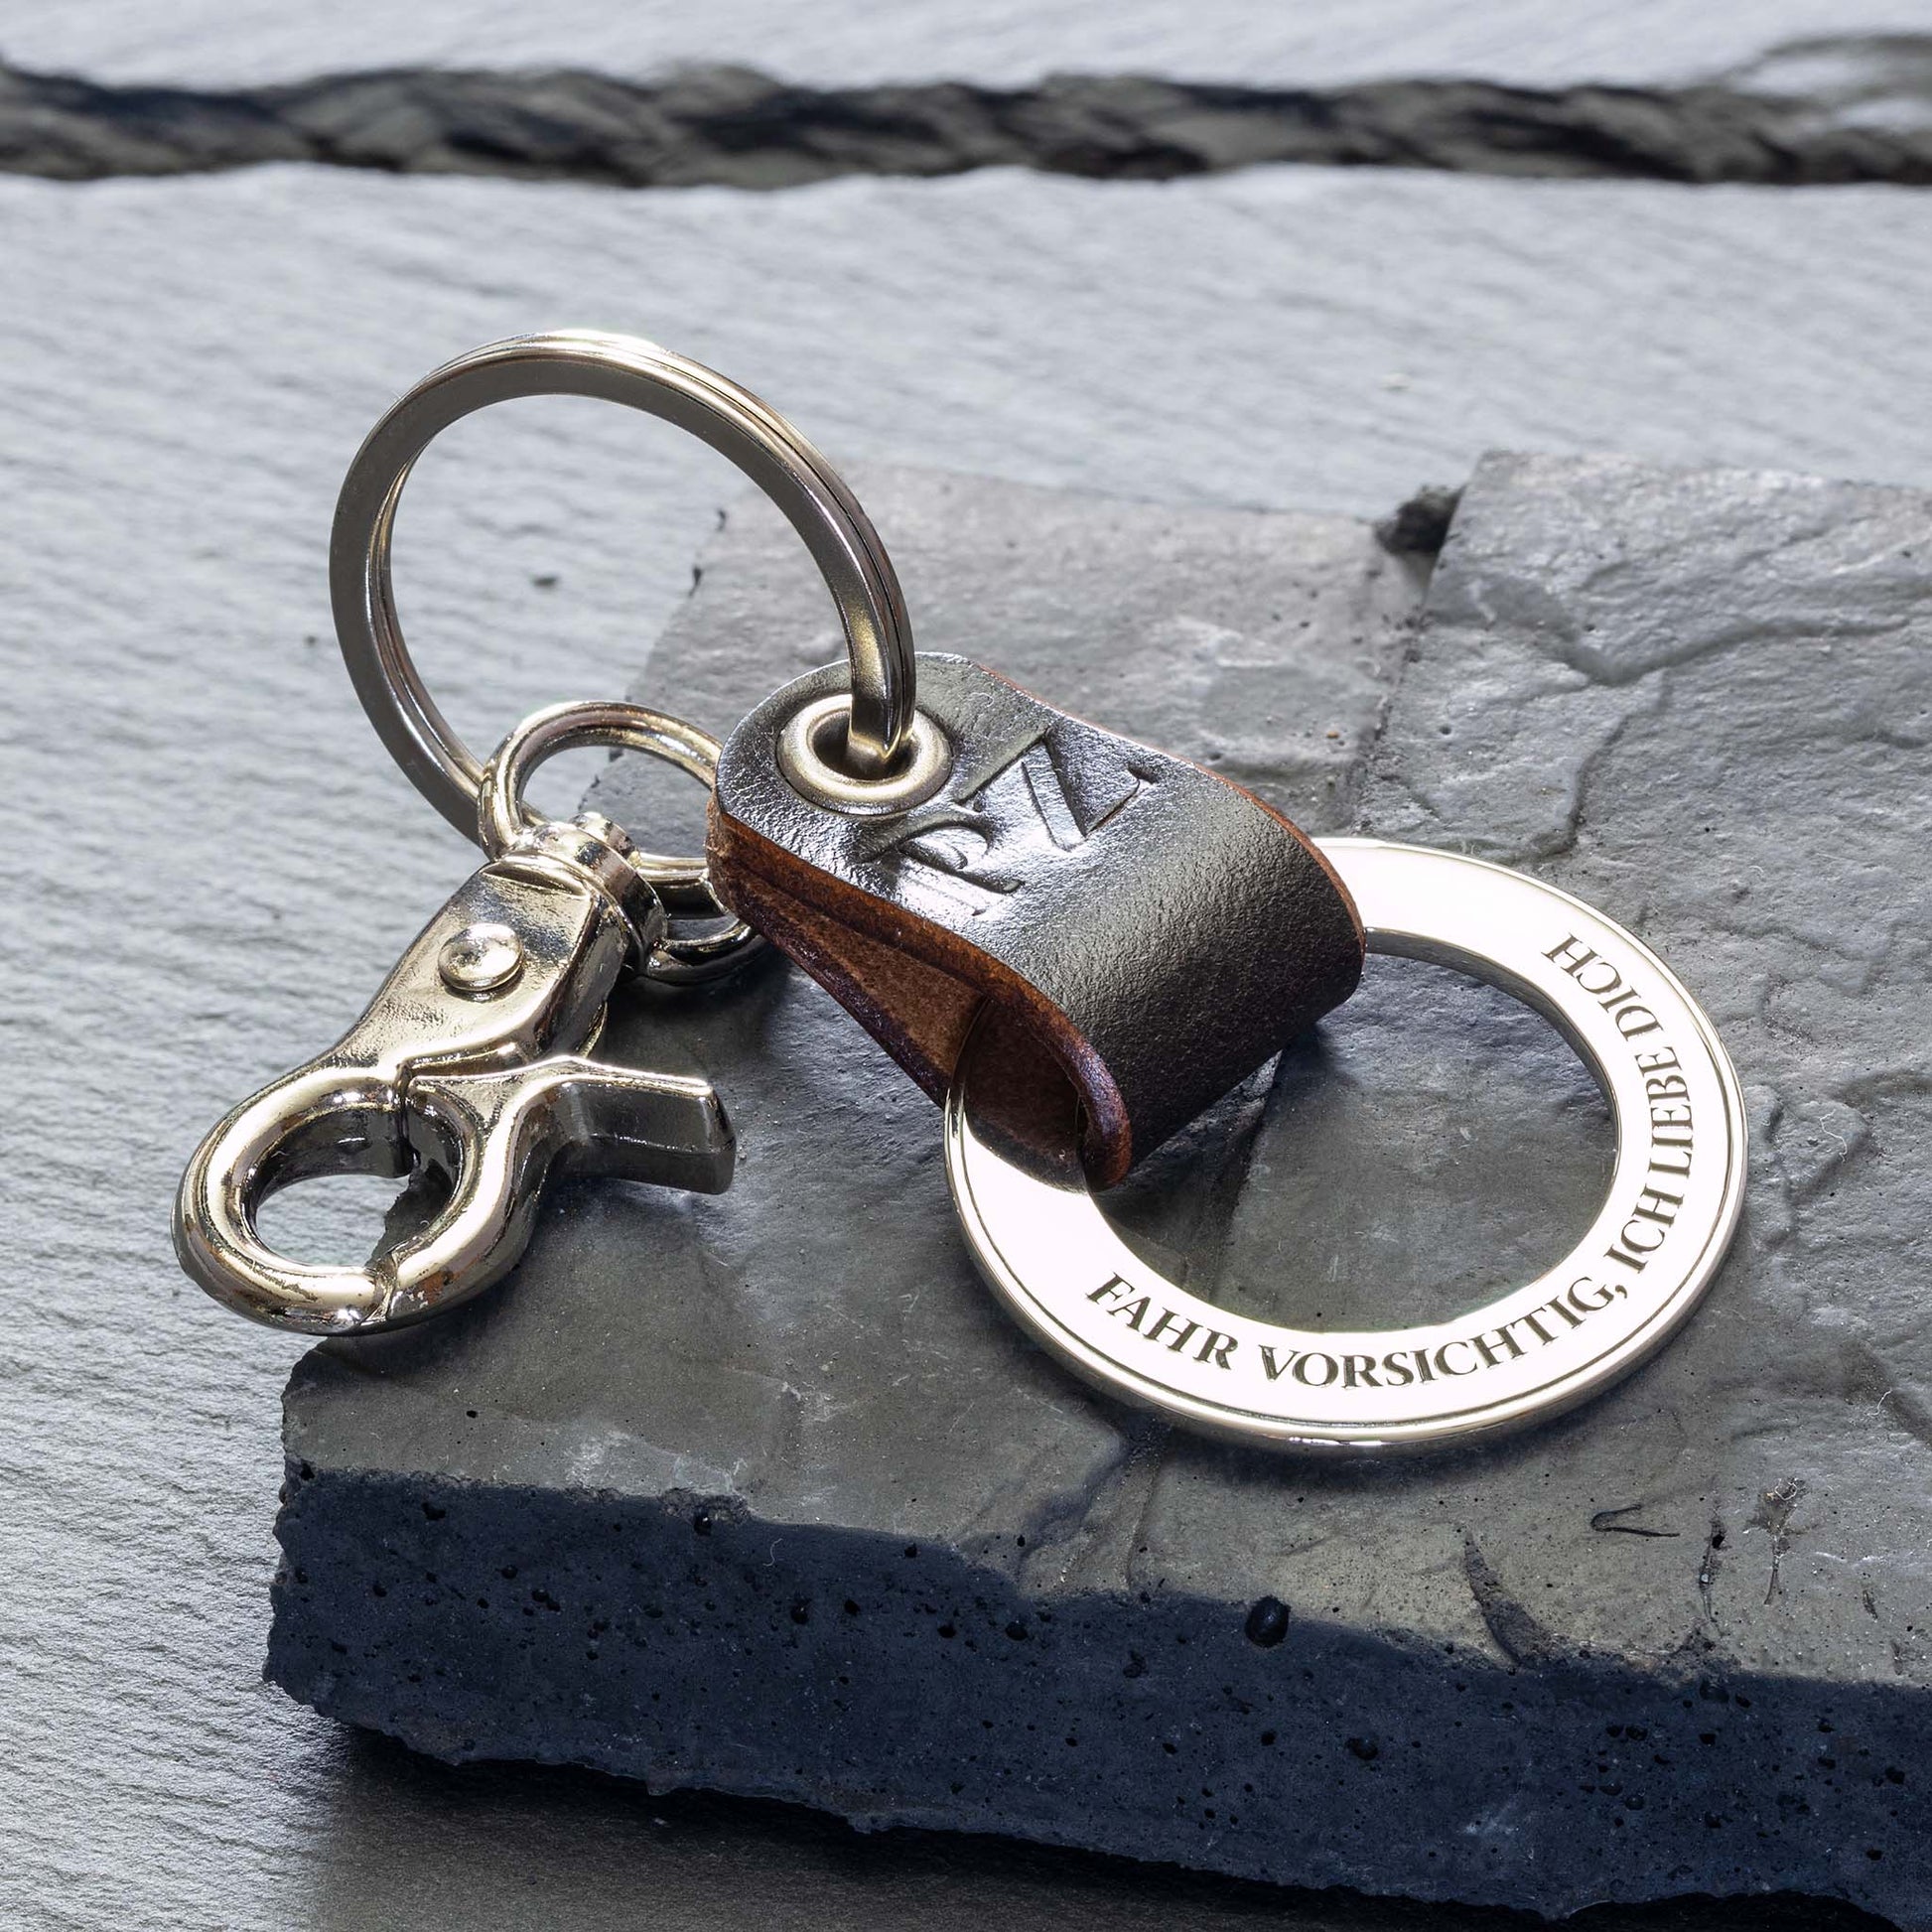 Dieser personalisierte Schlüsselanhänger ist ein aufmerksames Geschenk, perfekt für jeden besonderen Menschen in Ihrem Leben - seQua.Shop